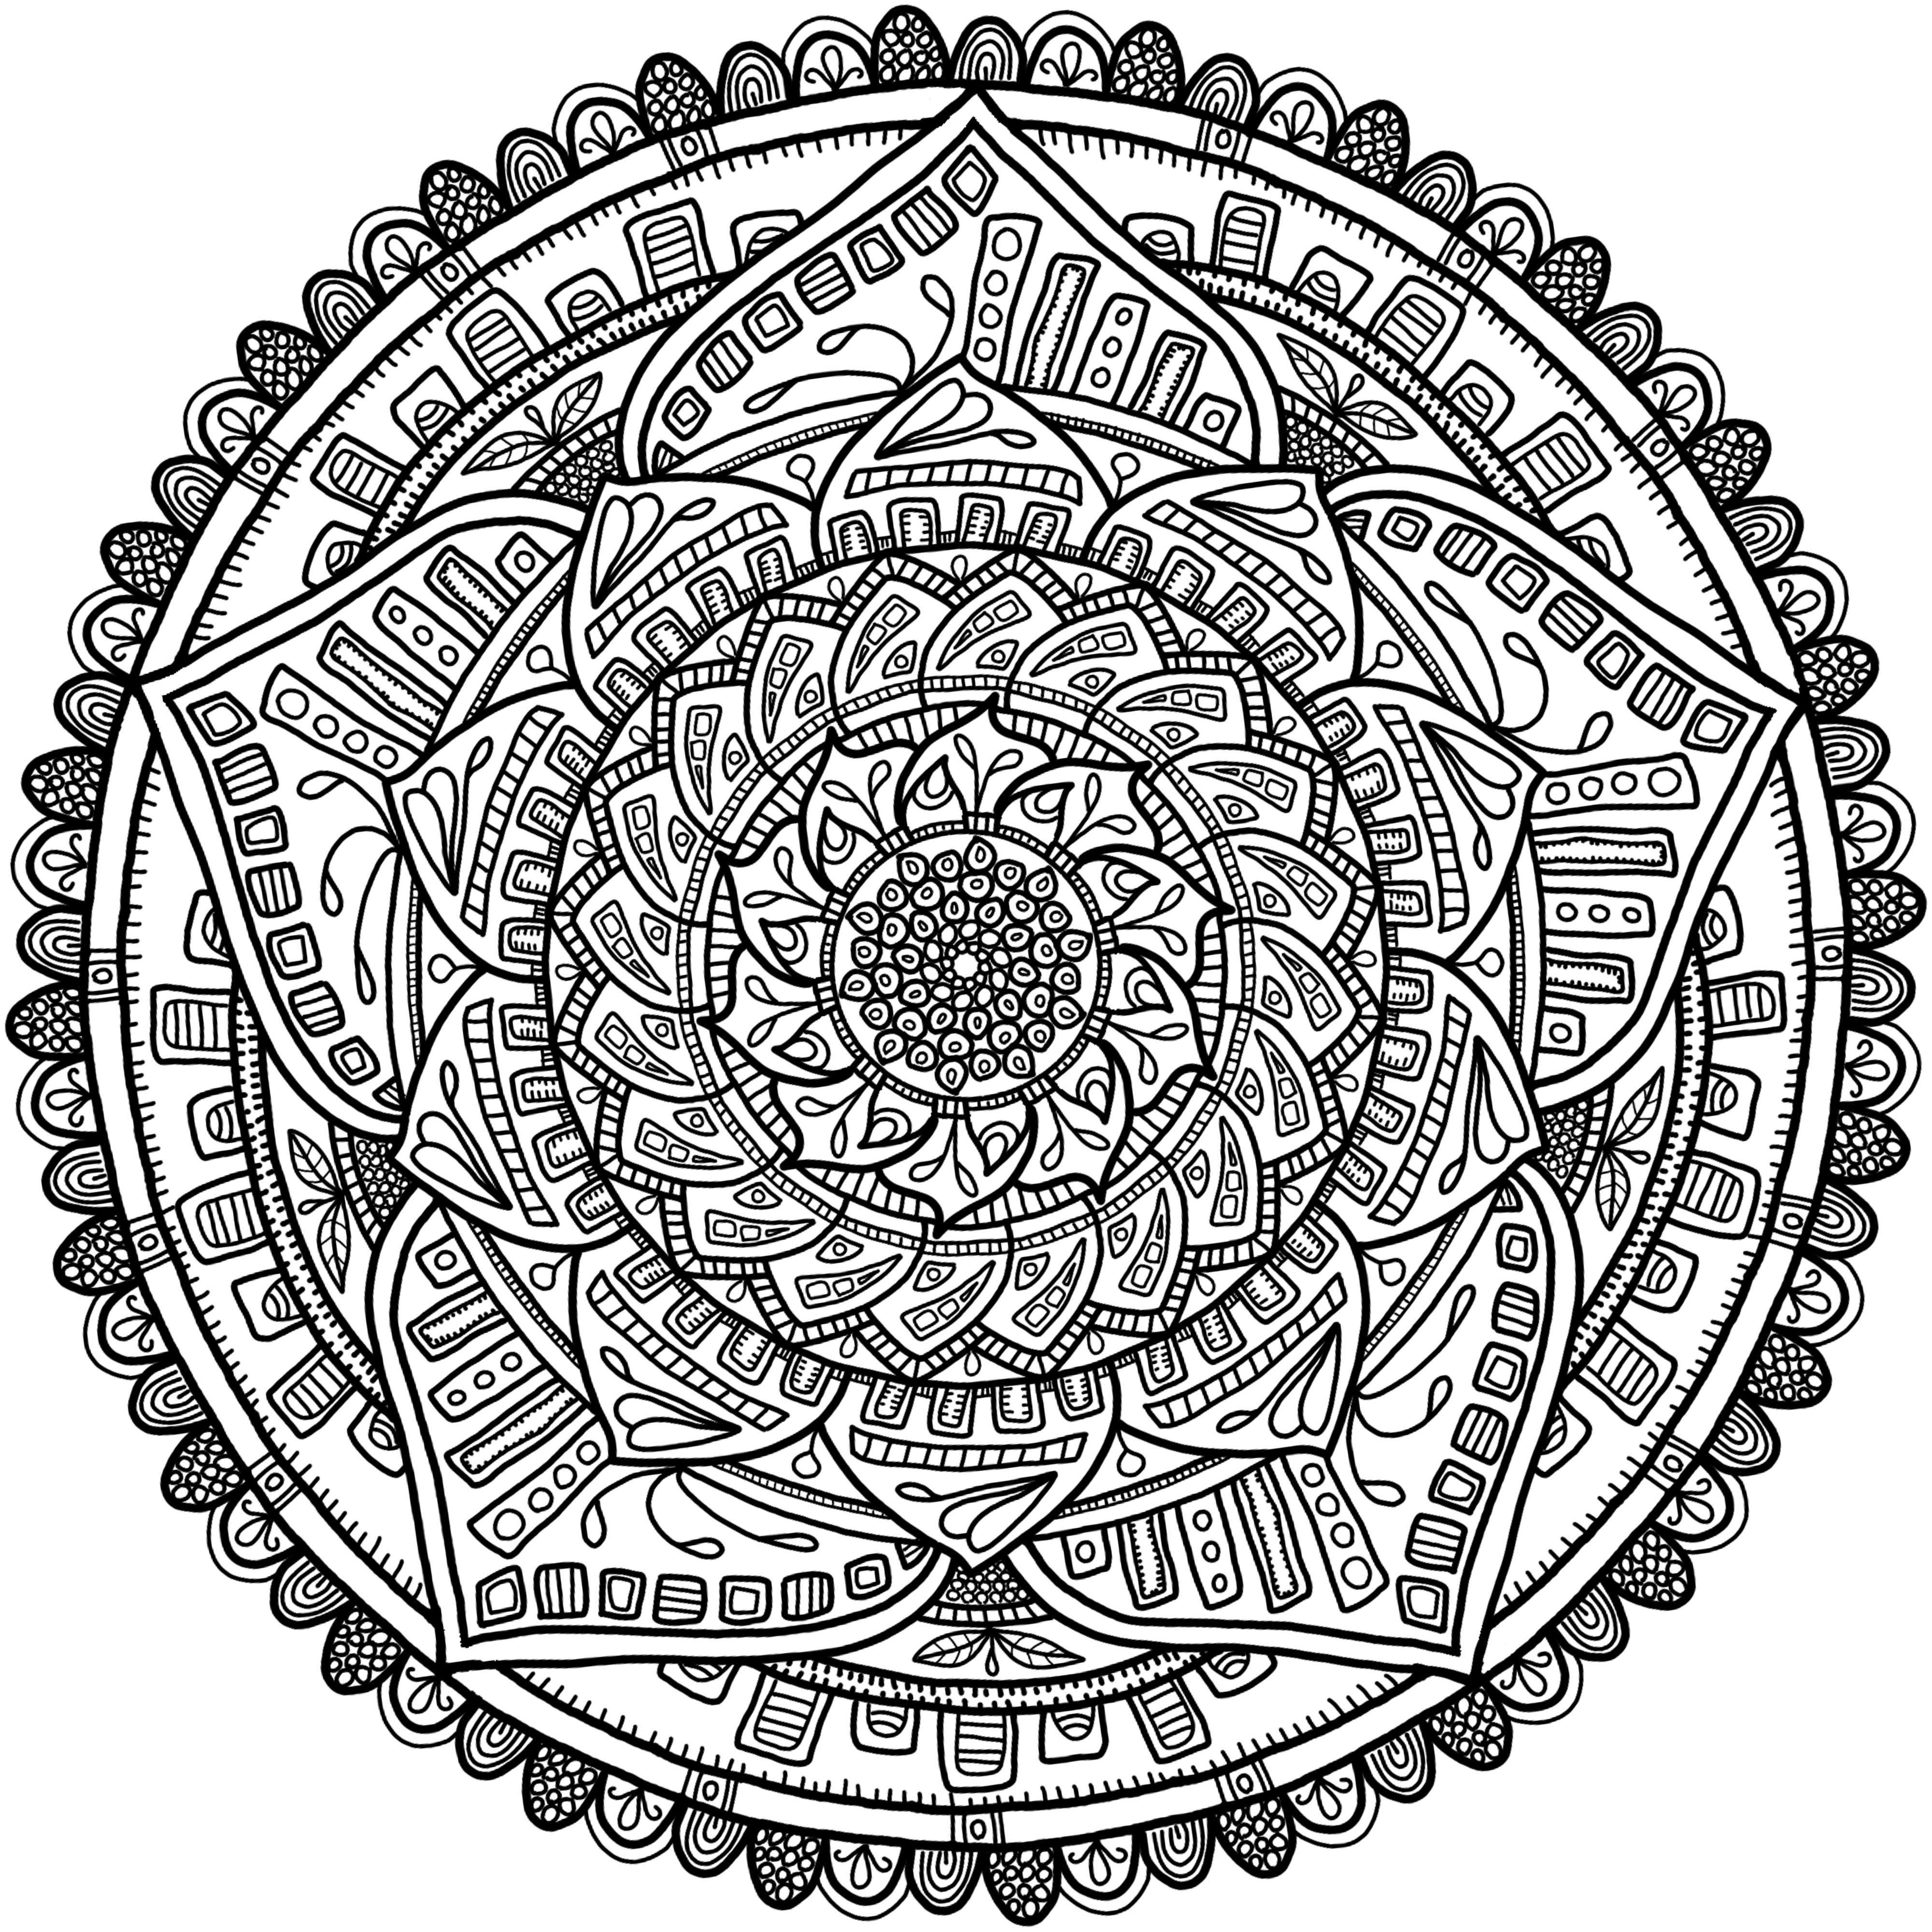 Krita Circles Mandala 6